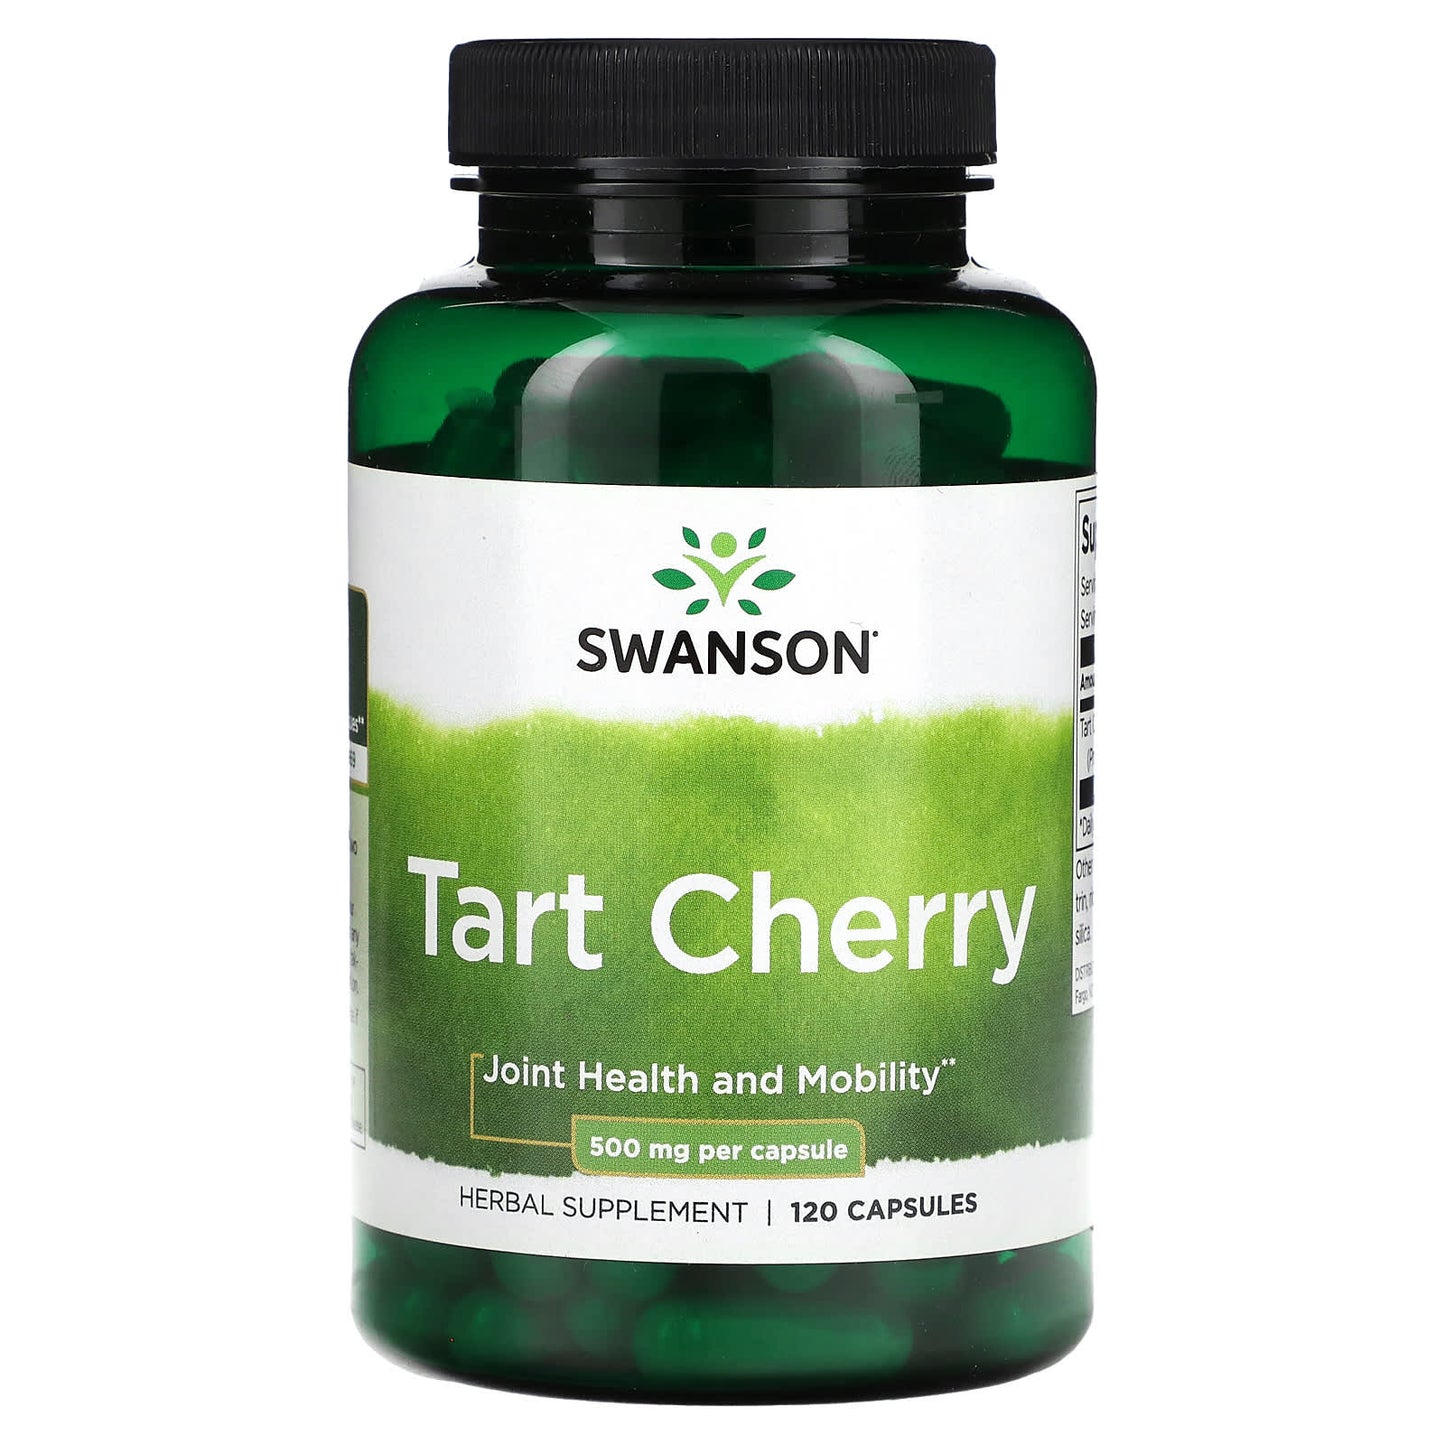 Swanson-Tart Cherry-500 mg-120 Capsules (250 mg per Capsule)